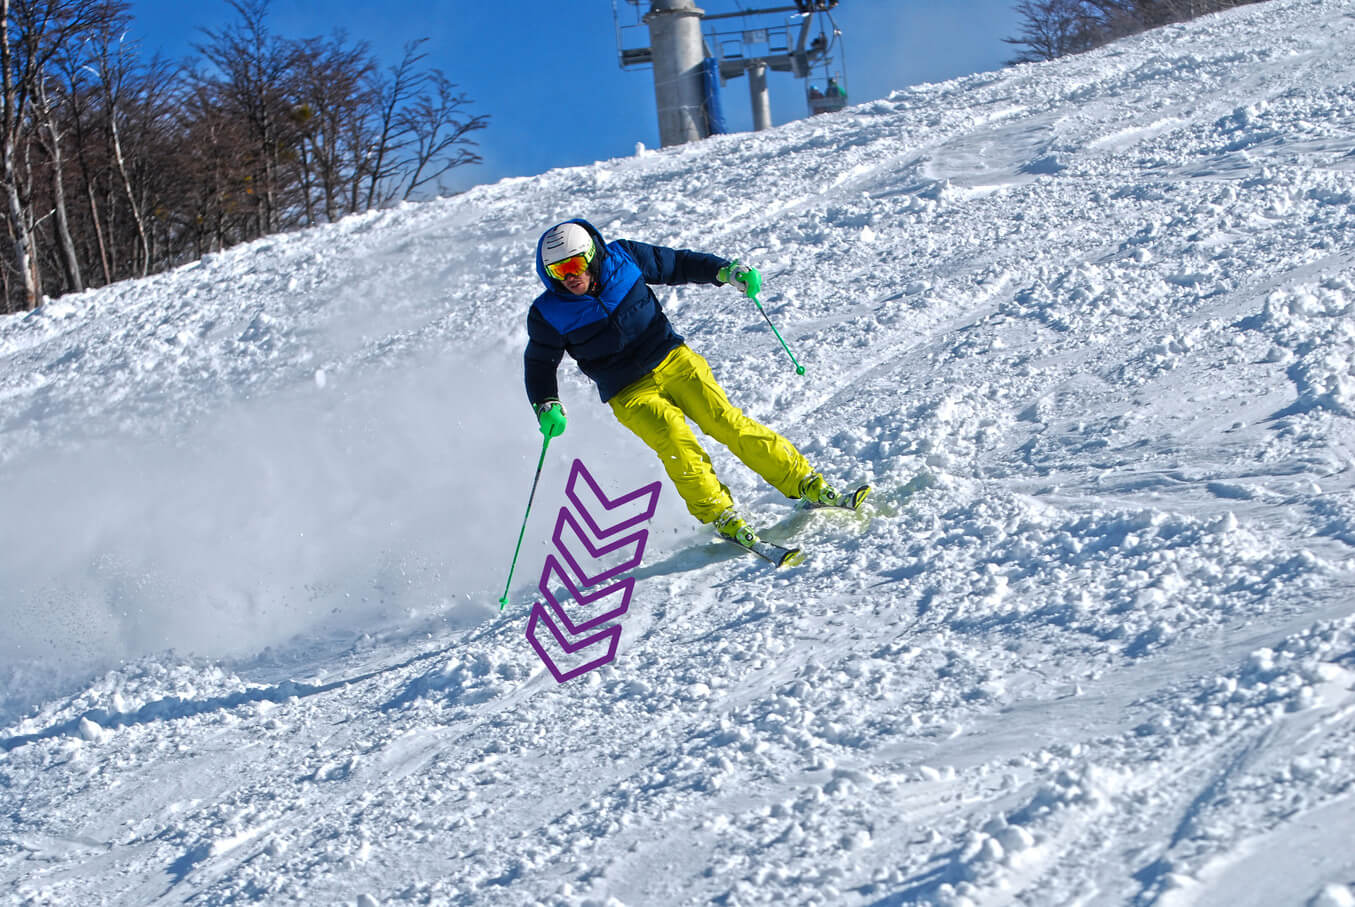 Esquiador iniciando una curva en una pendiente empinada - moviendo su centro de masa adelante y pendiente abajo.